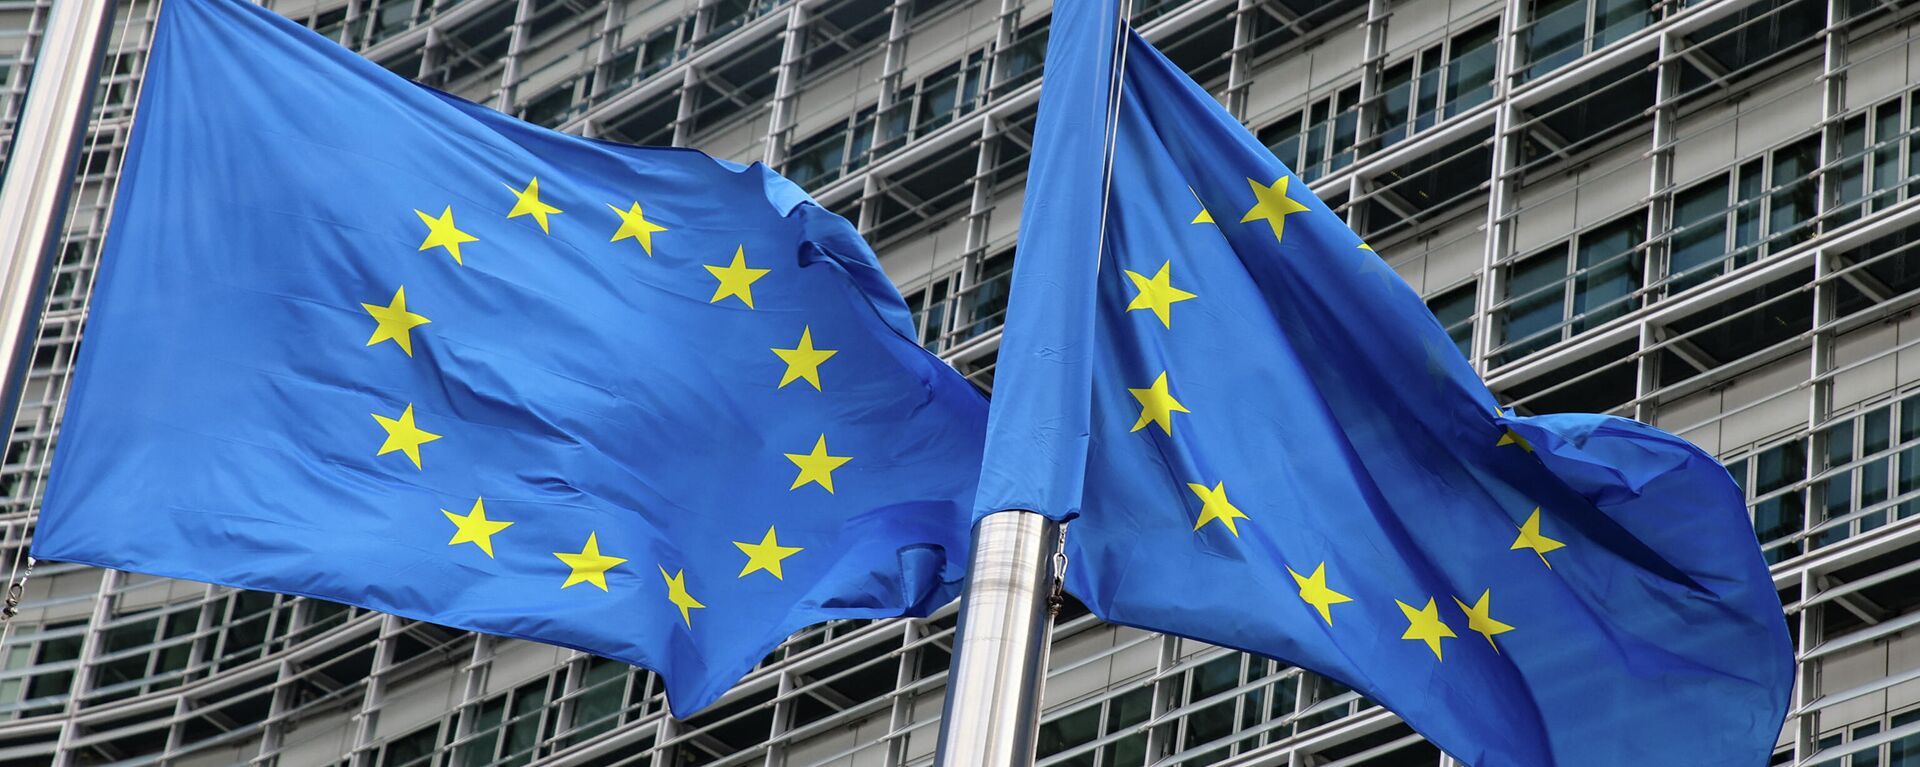 Флаги Европейского союза у штаб-квартиры Европейской комиссии в Брюсселе - Sputnik Литва, 1920, 29.11.2021